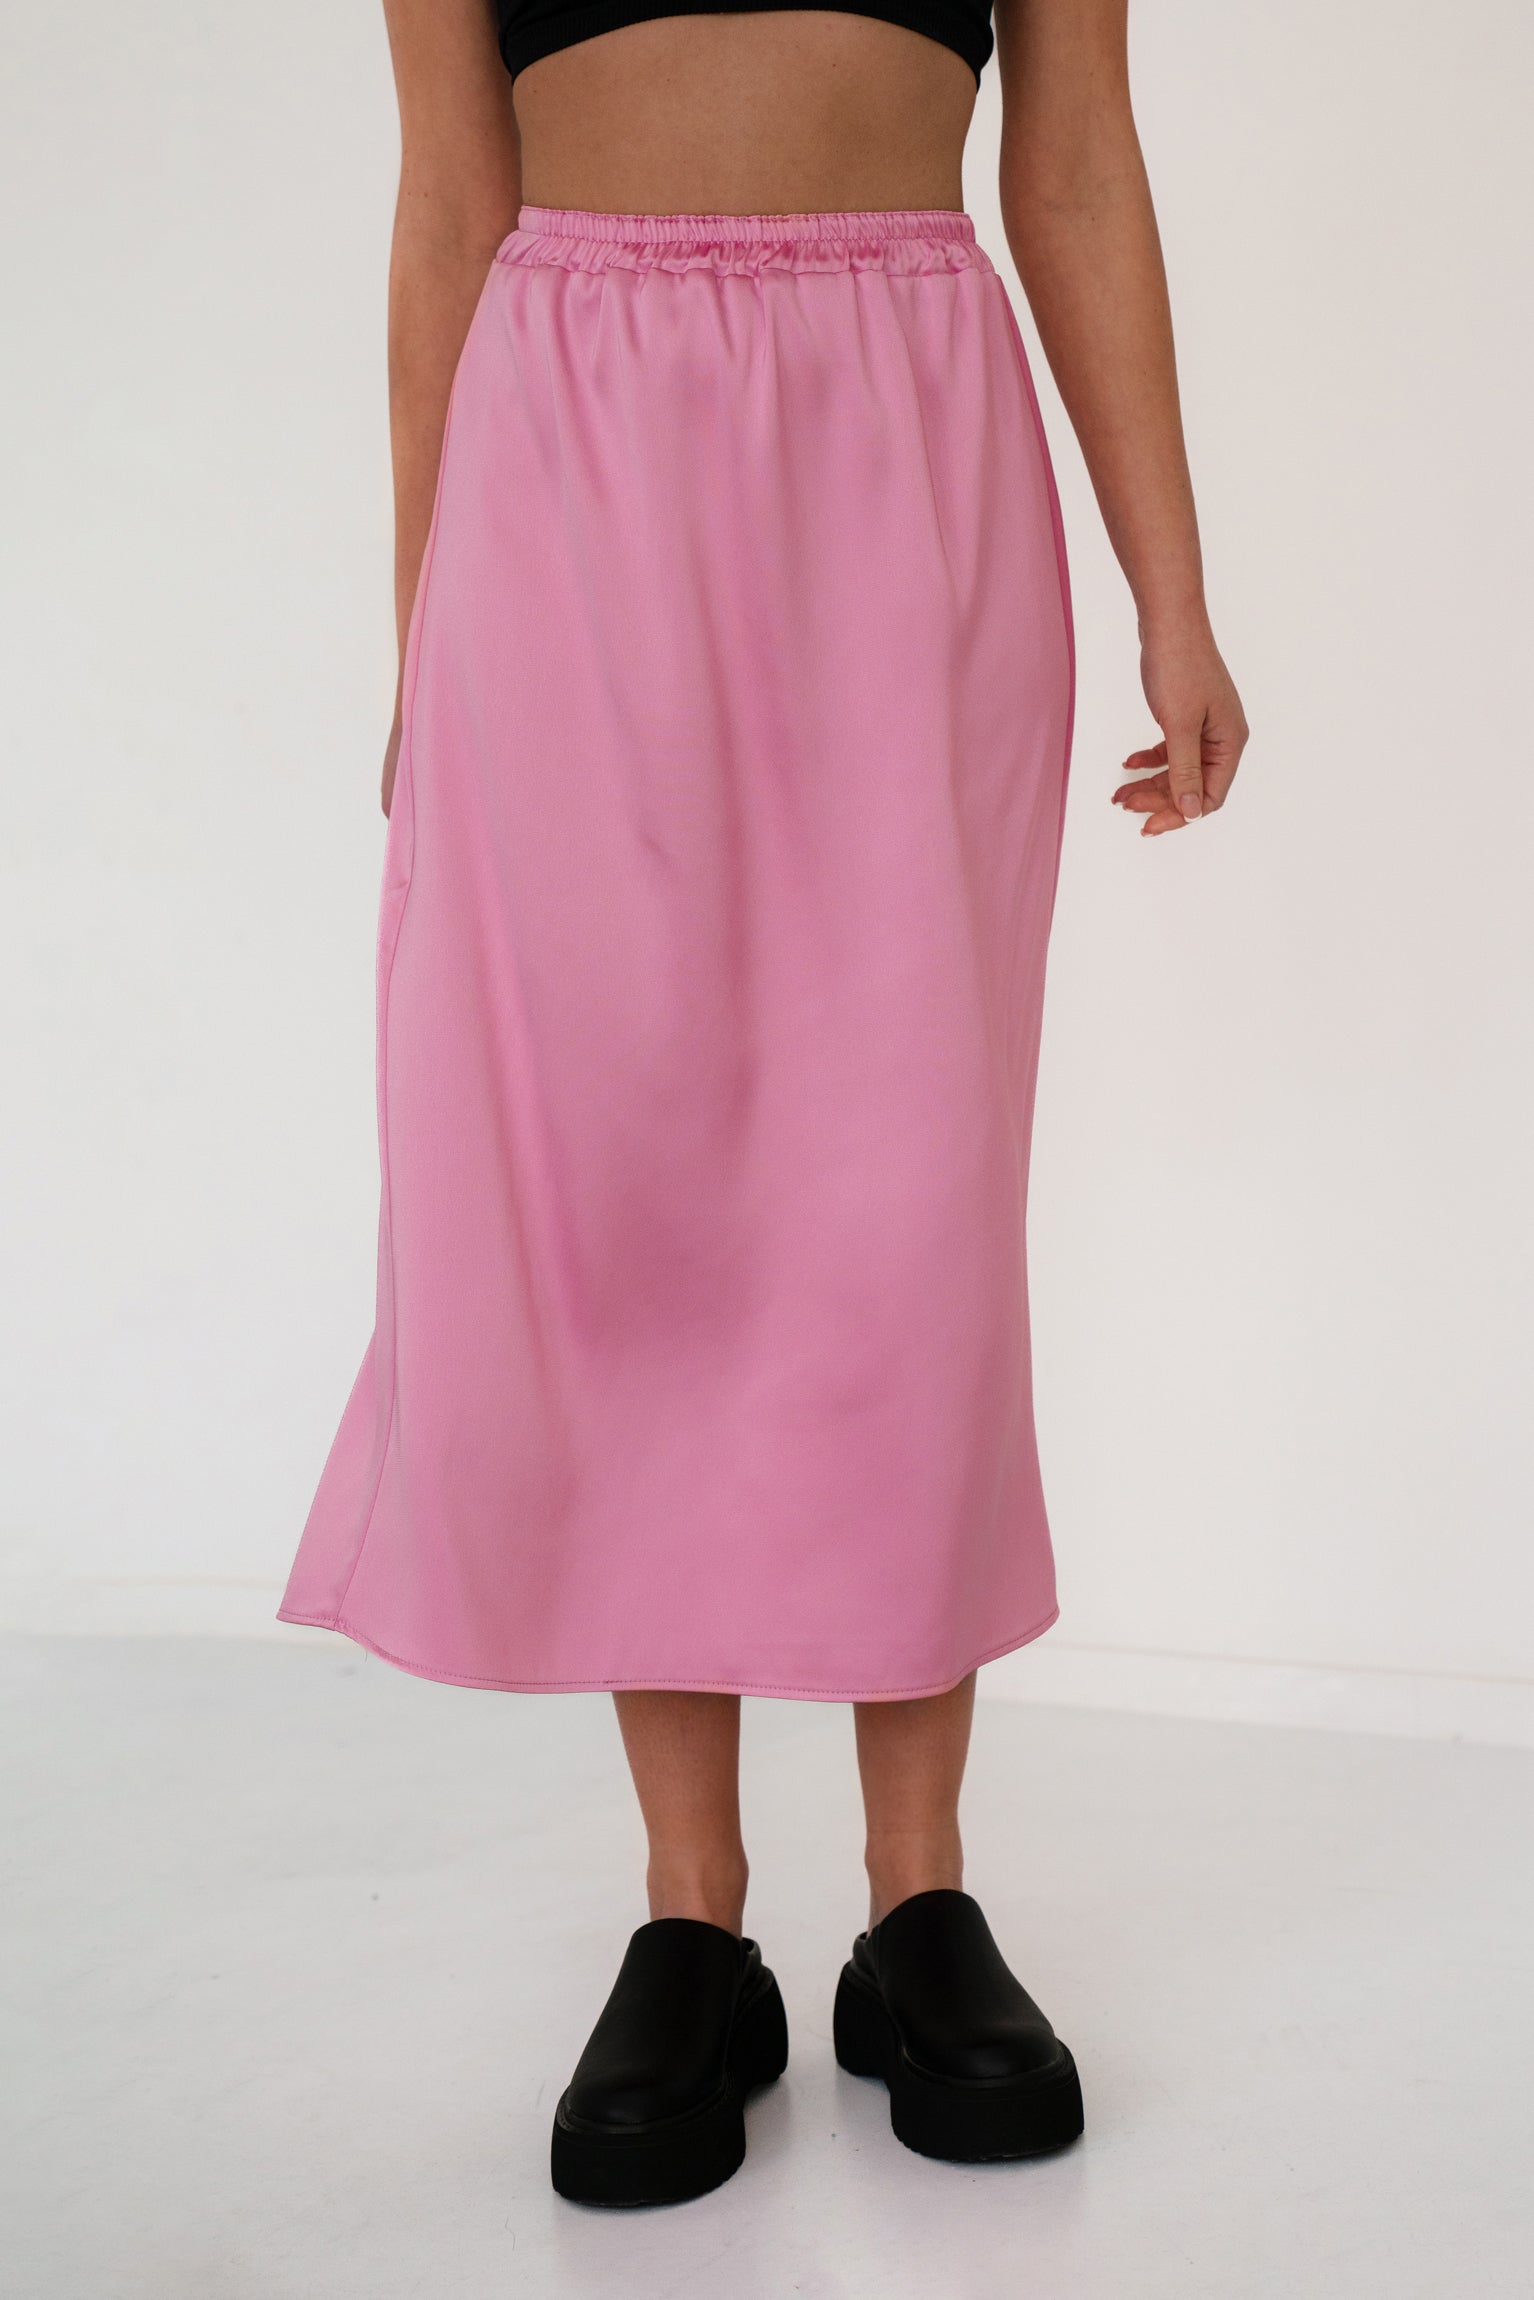 PINK SLIP skirt